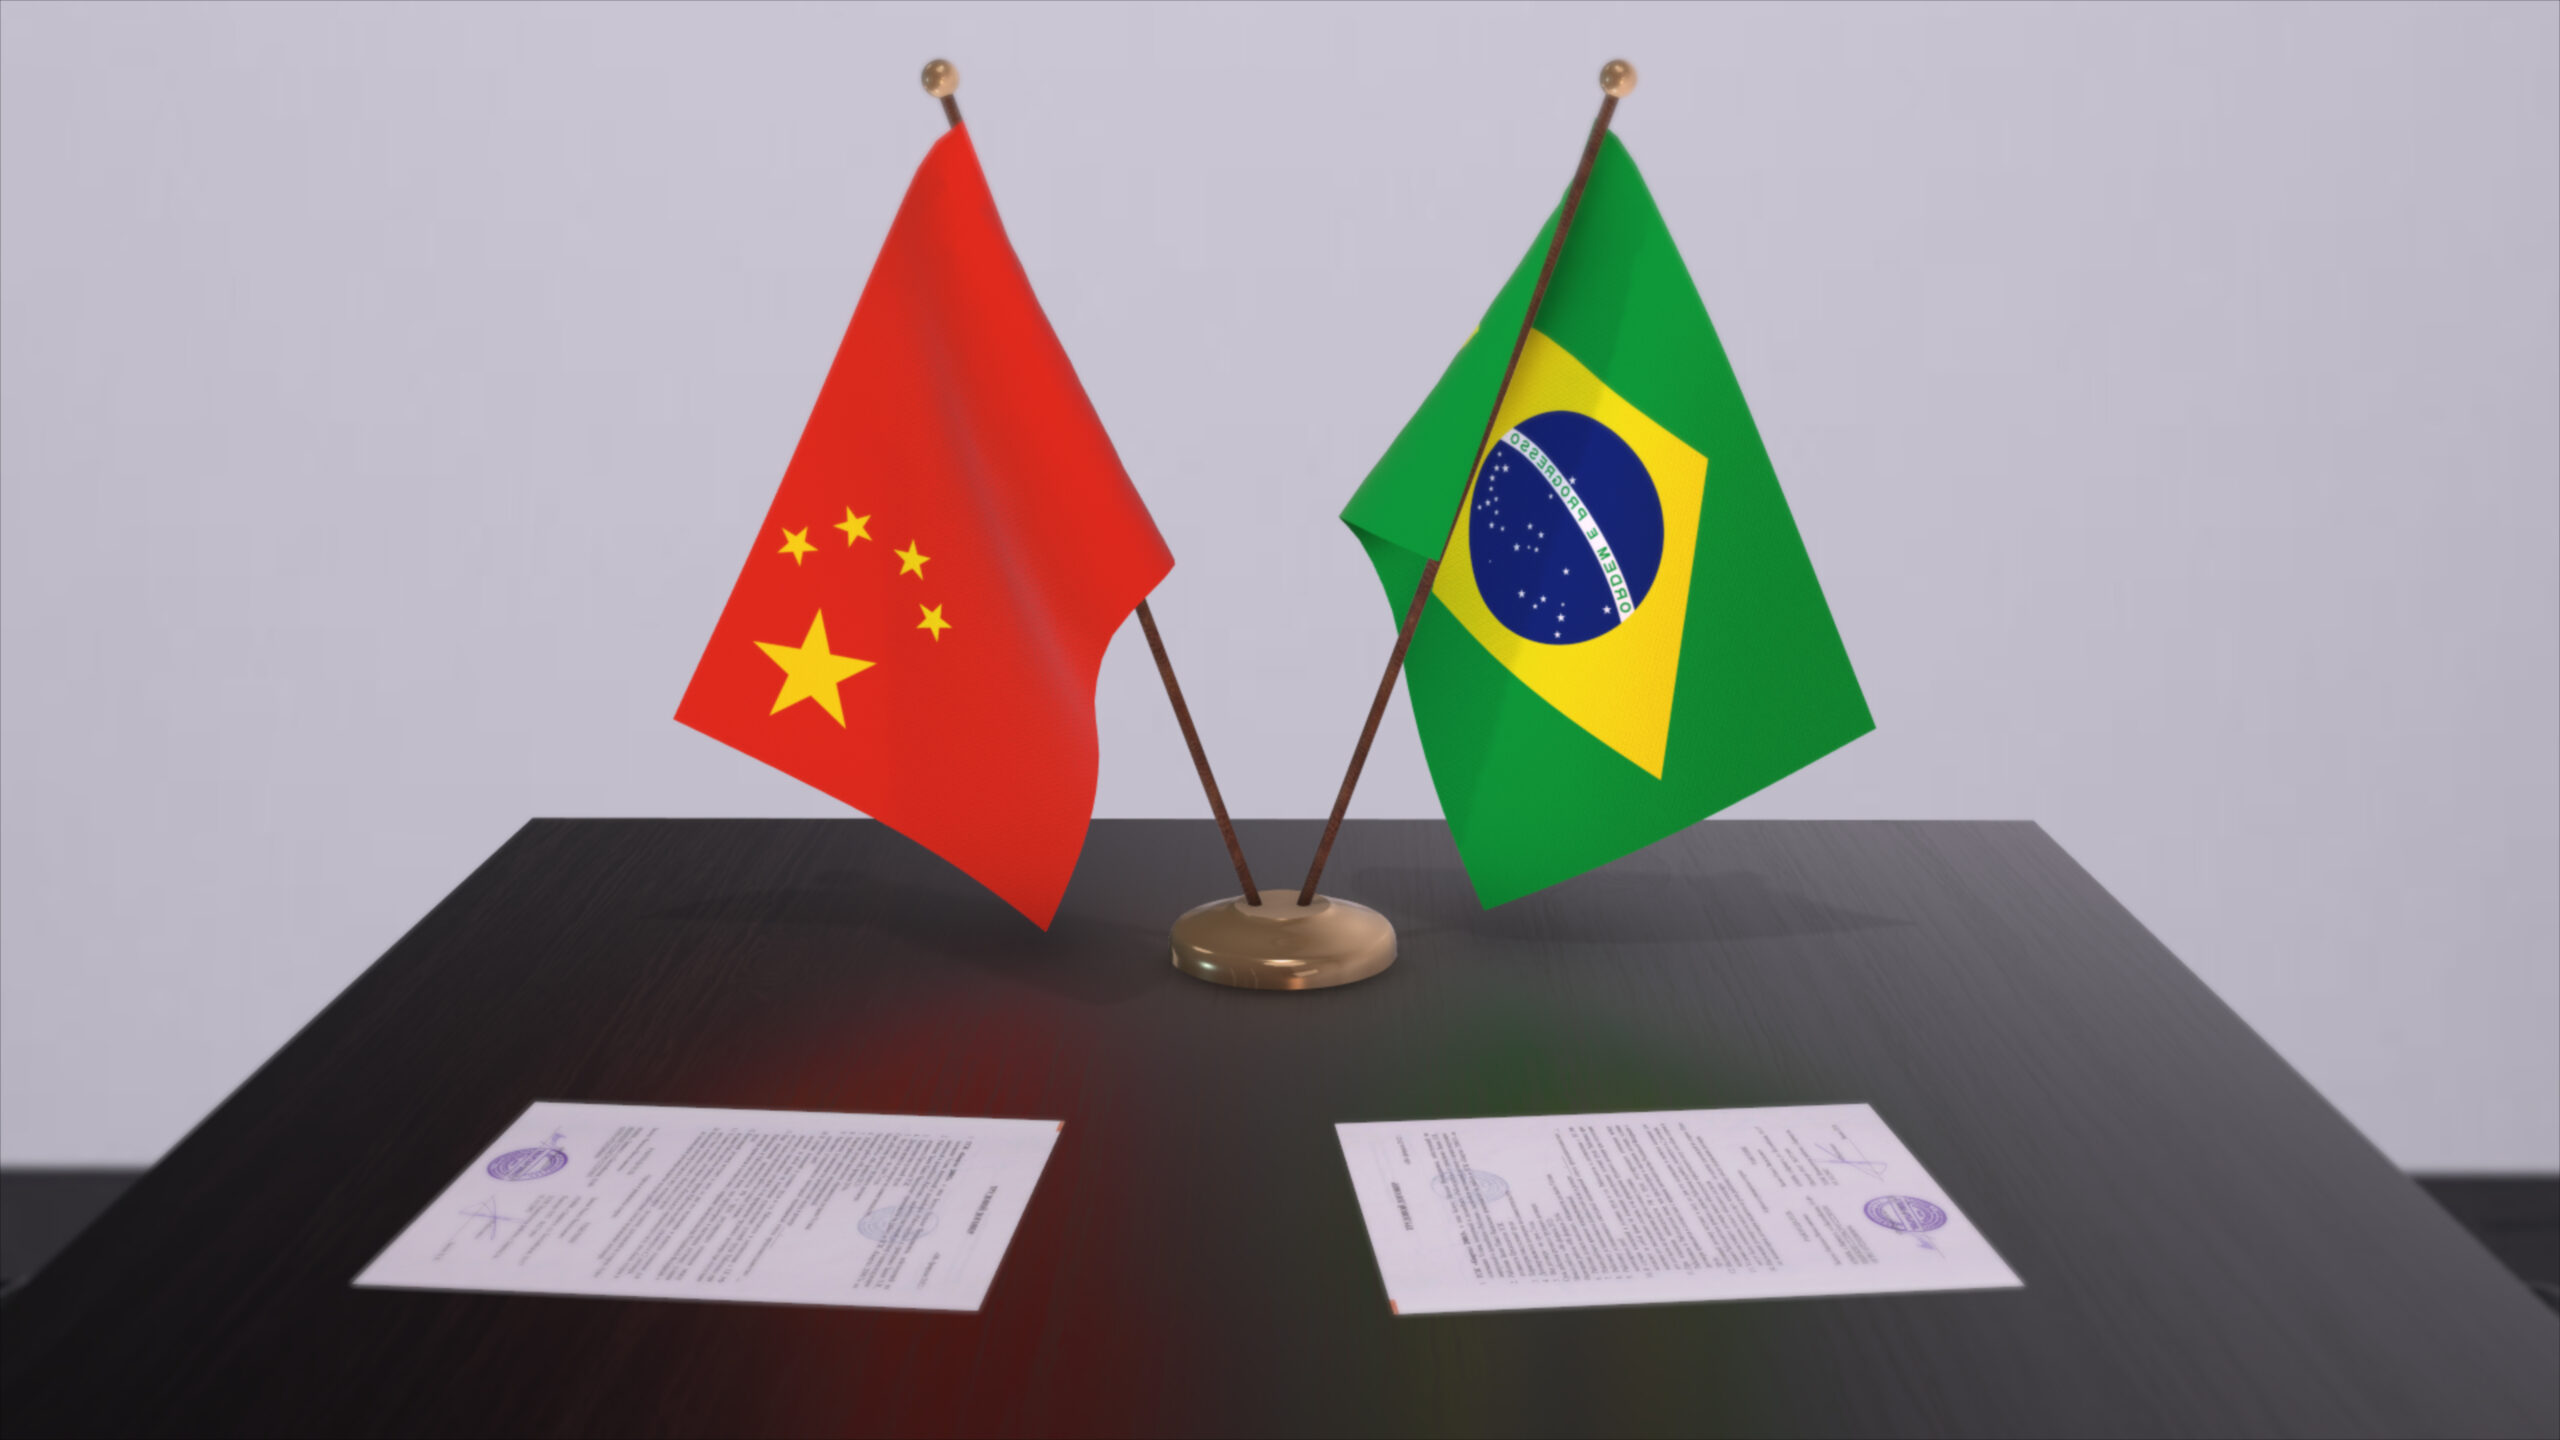 Bandeiras da China e do Brasil apoiadas em cima de uma mesa, simbolizando a relação diplomática entre os países.